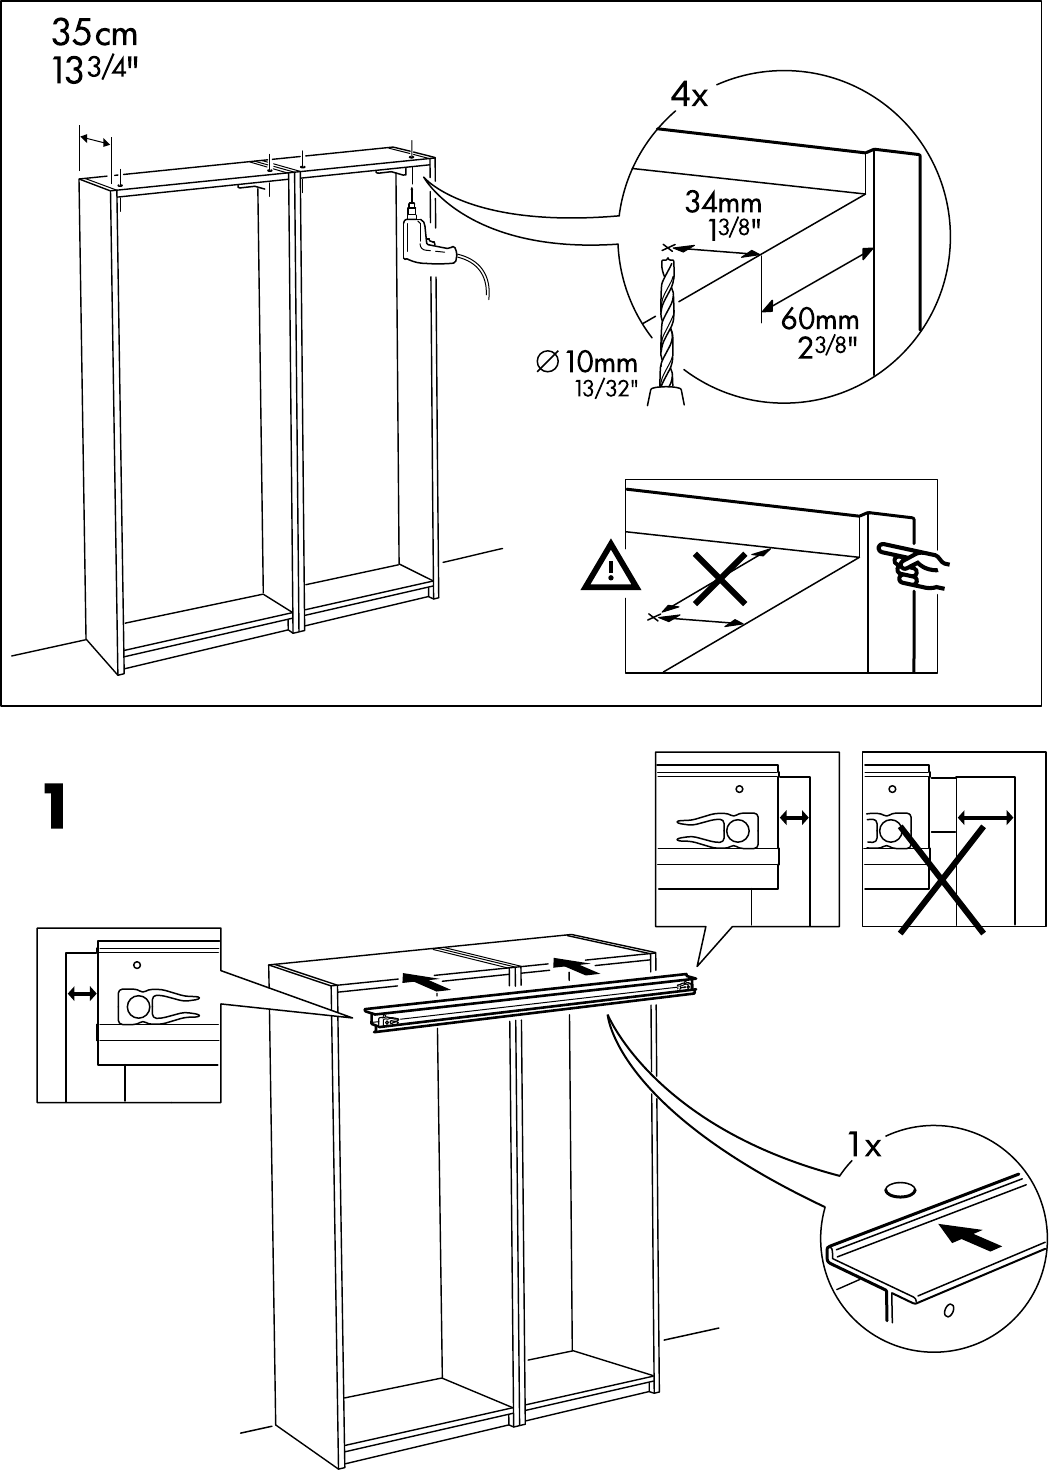 Bucht Werbung Anspruchsvoll Ikea Pax Schrank Aufbauanleitung Als Antwort Auf Die Ernst Absichtlich